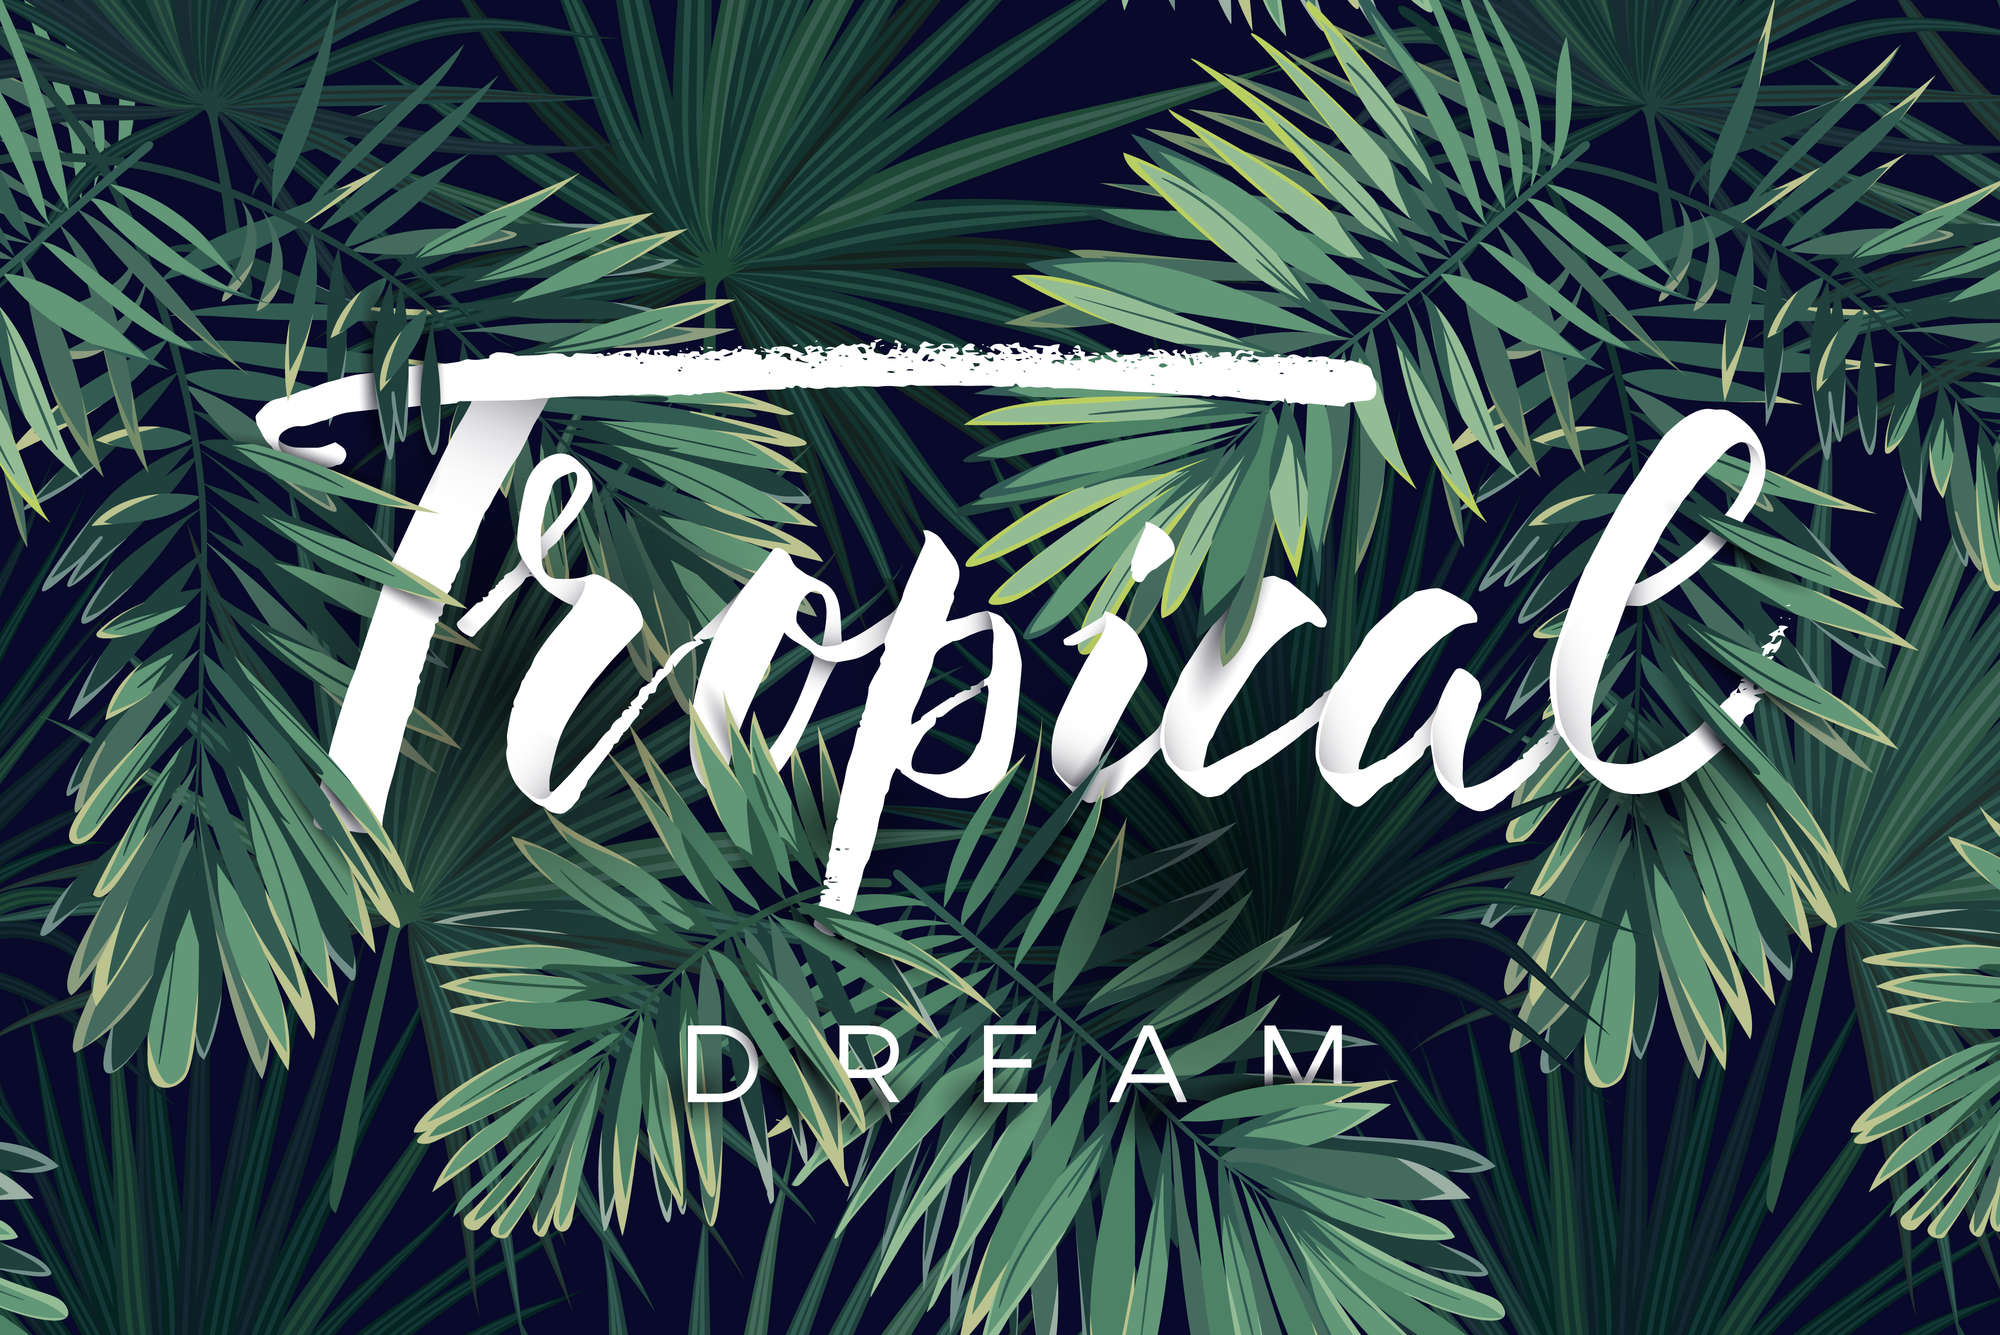             Carta da parati grafica con scritta "Tropical Dream" su pile liscio opaco
        